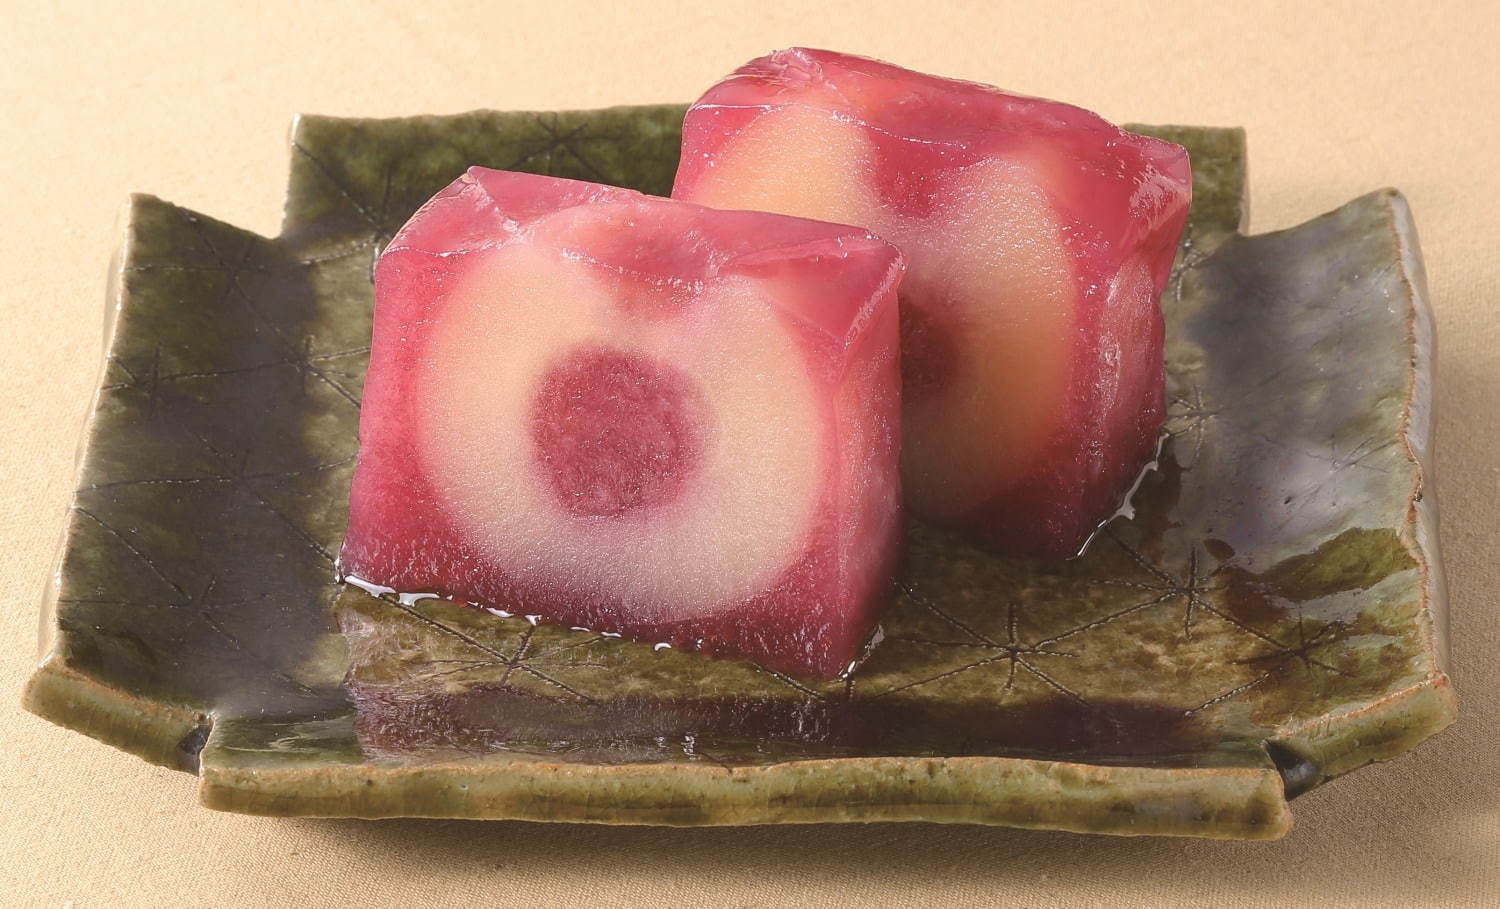 宗家 源 吉兆庵から国産紅玉を丸ごと1個使用した和菓子「宝玉りんご」ねずみを描く干支羊羹も | 写真